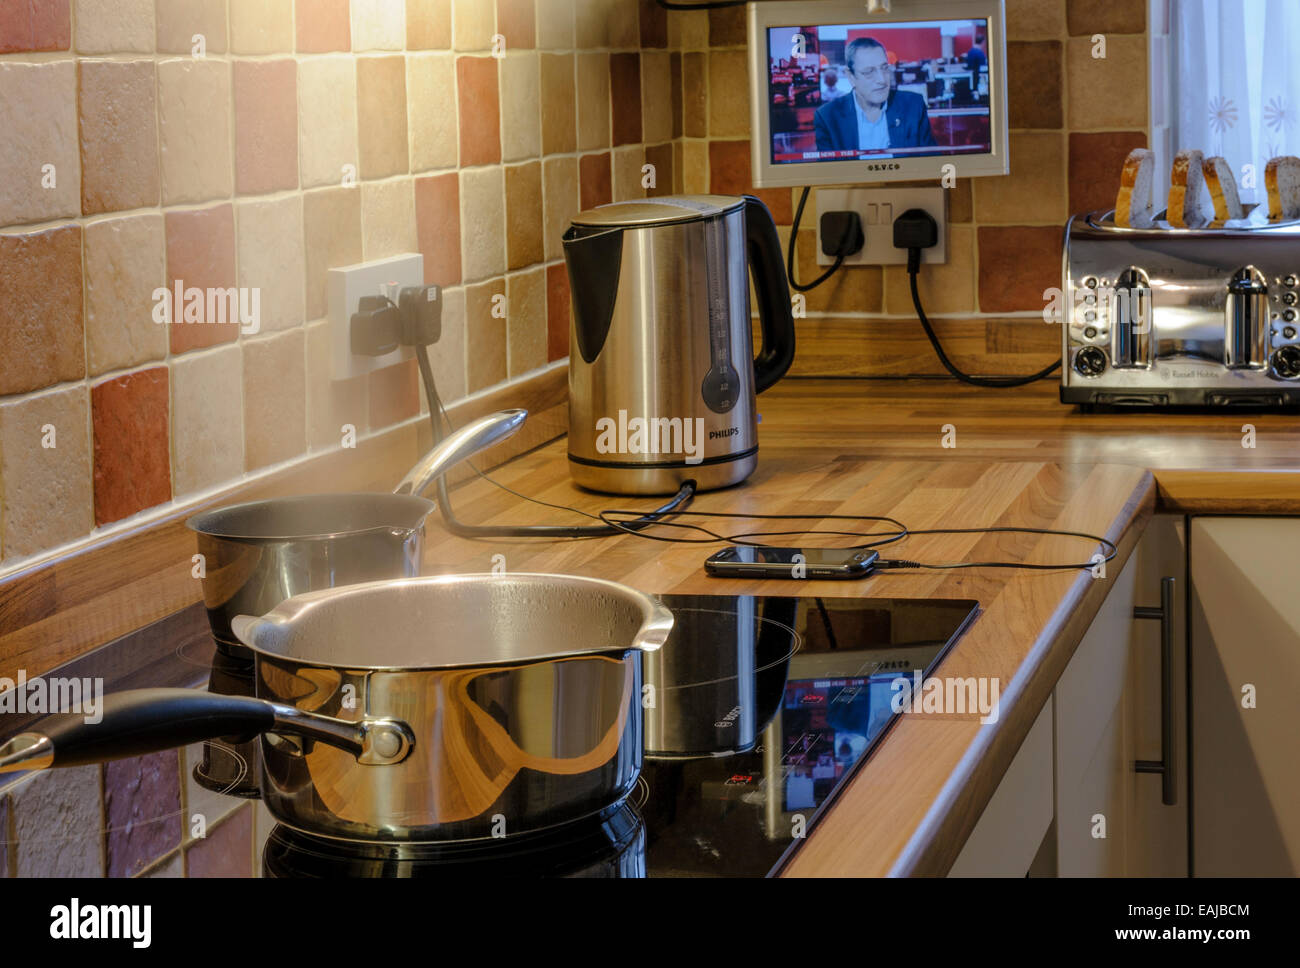 Molti apparecchi utilizzati in una cucina moderna.pesante consumo elettrico. Foto Stock